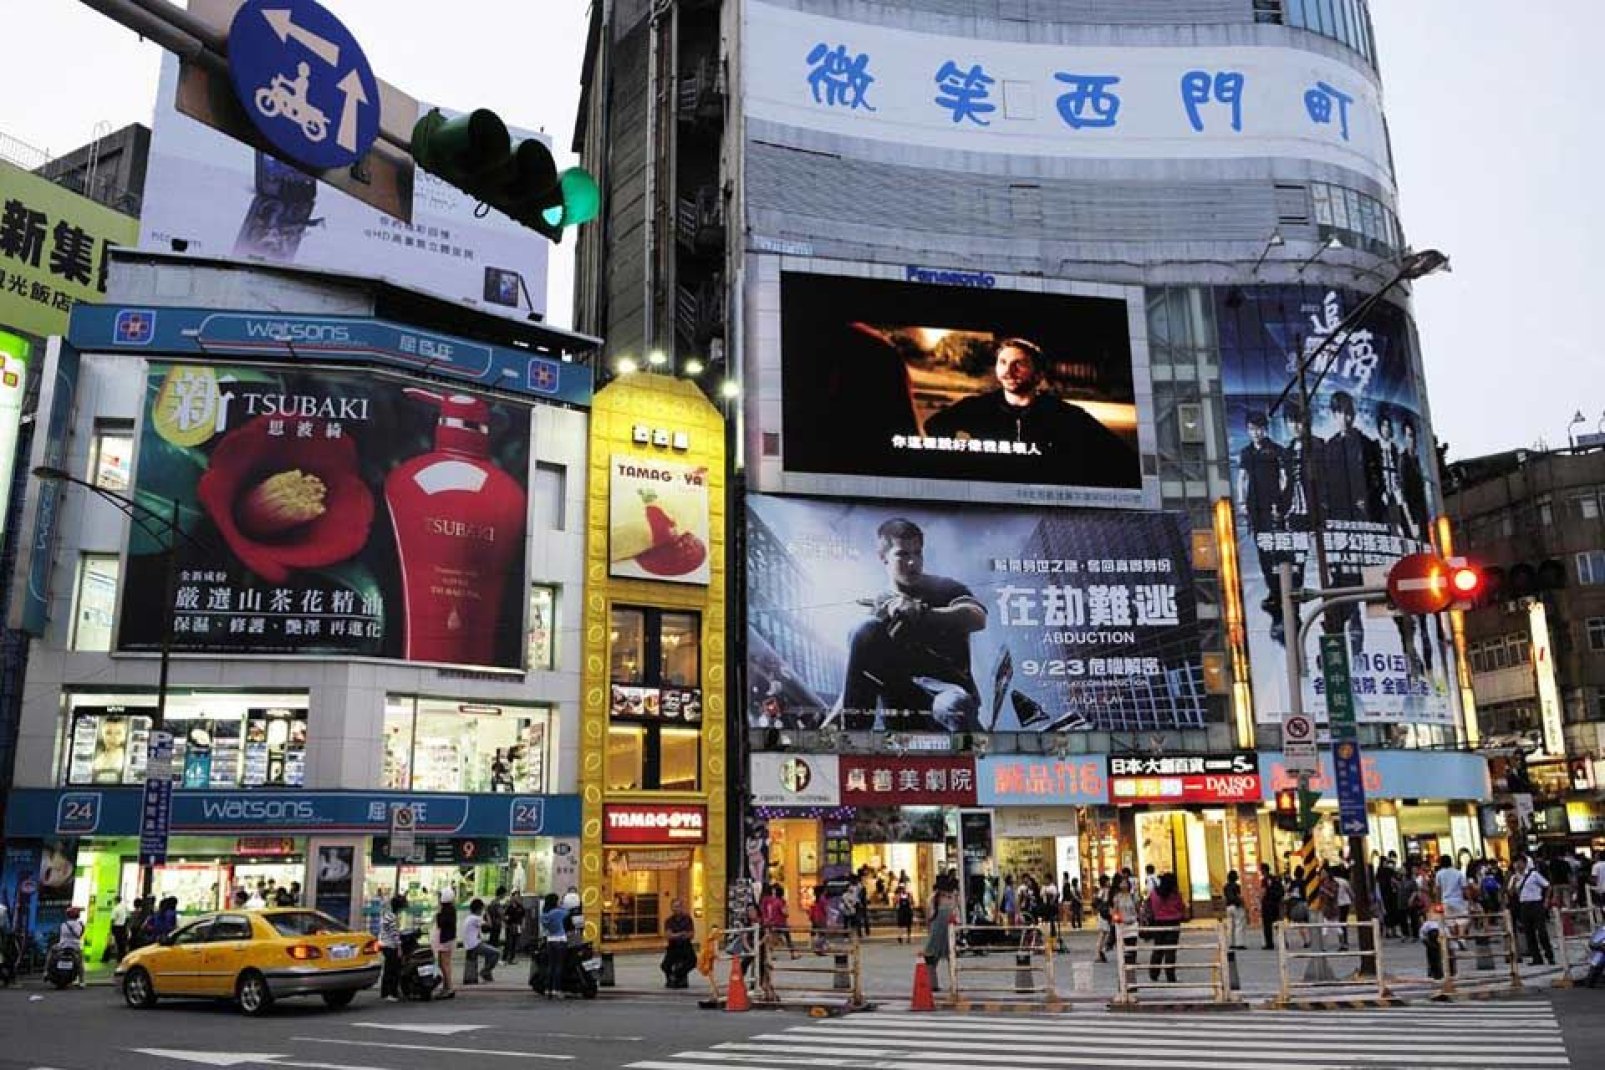 Le "Time square" de Taïpei. Tours en verre et hôtels de luxe côtoient les publicités colorées et les échoppes grouillantes au ras du sol.